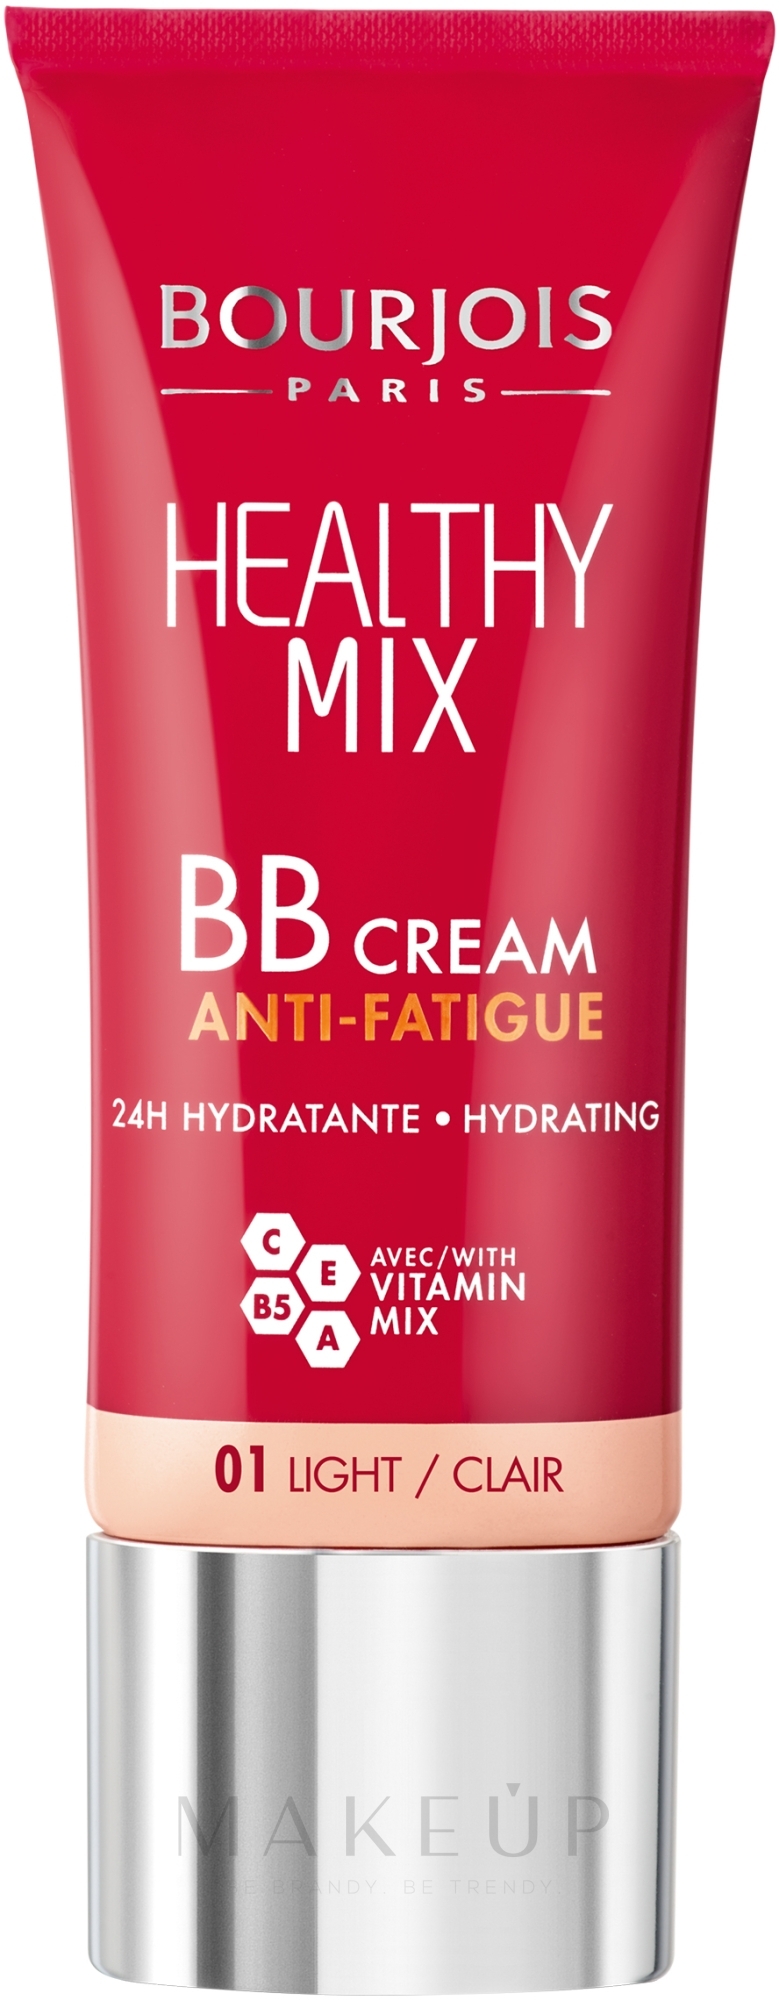 Feuchtigkeitsspendende BB Creme gegen müde Haut mit Vitaminkomplex - Bourjois Healthy Mix BB Cream Anti-Fatigue — Foto 01 - Light/Clair